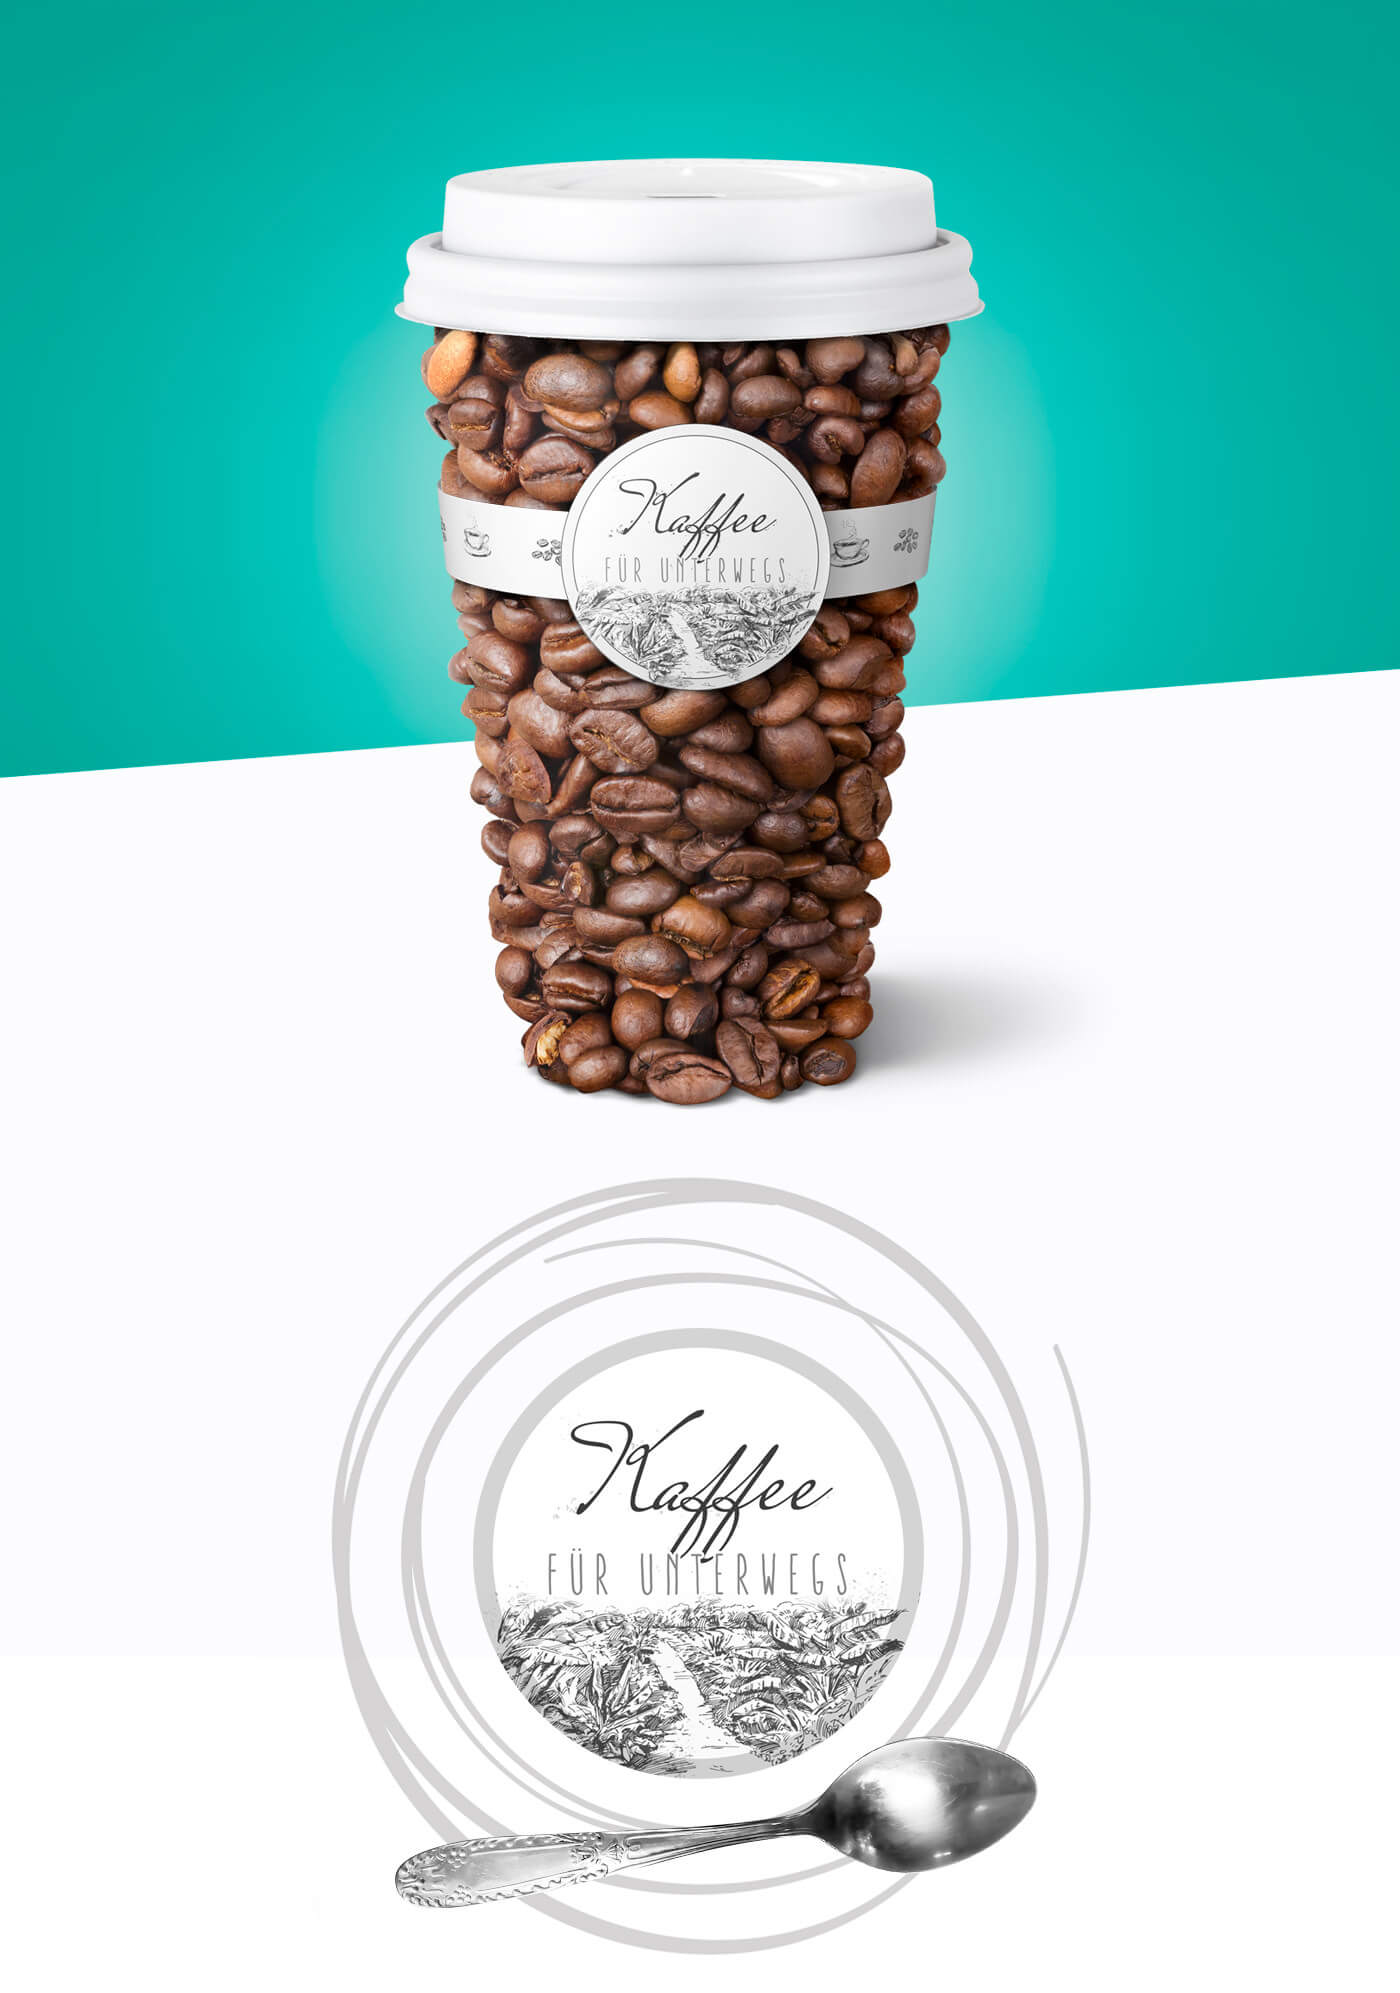 kaffee für unterwegs - digital art werbebild aus ganzen kaffeebohnen.